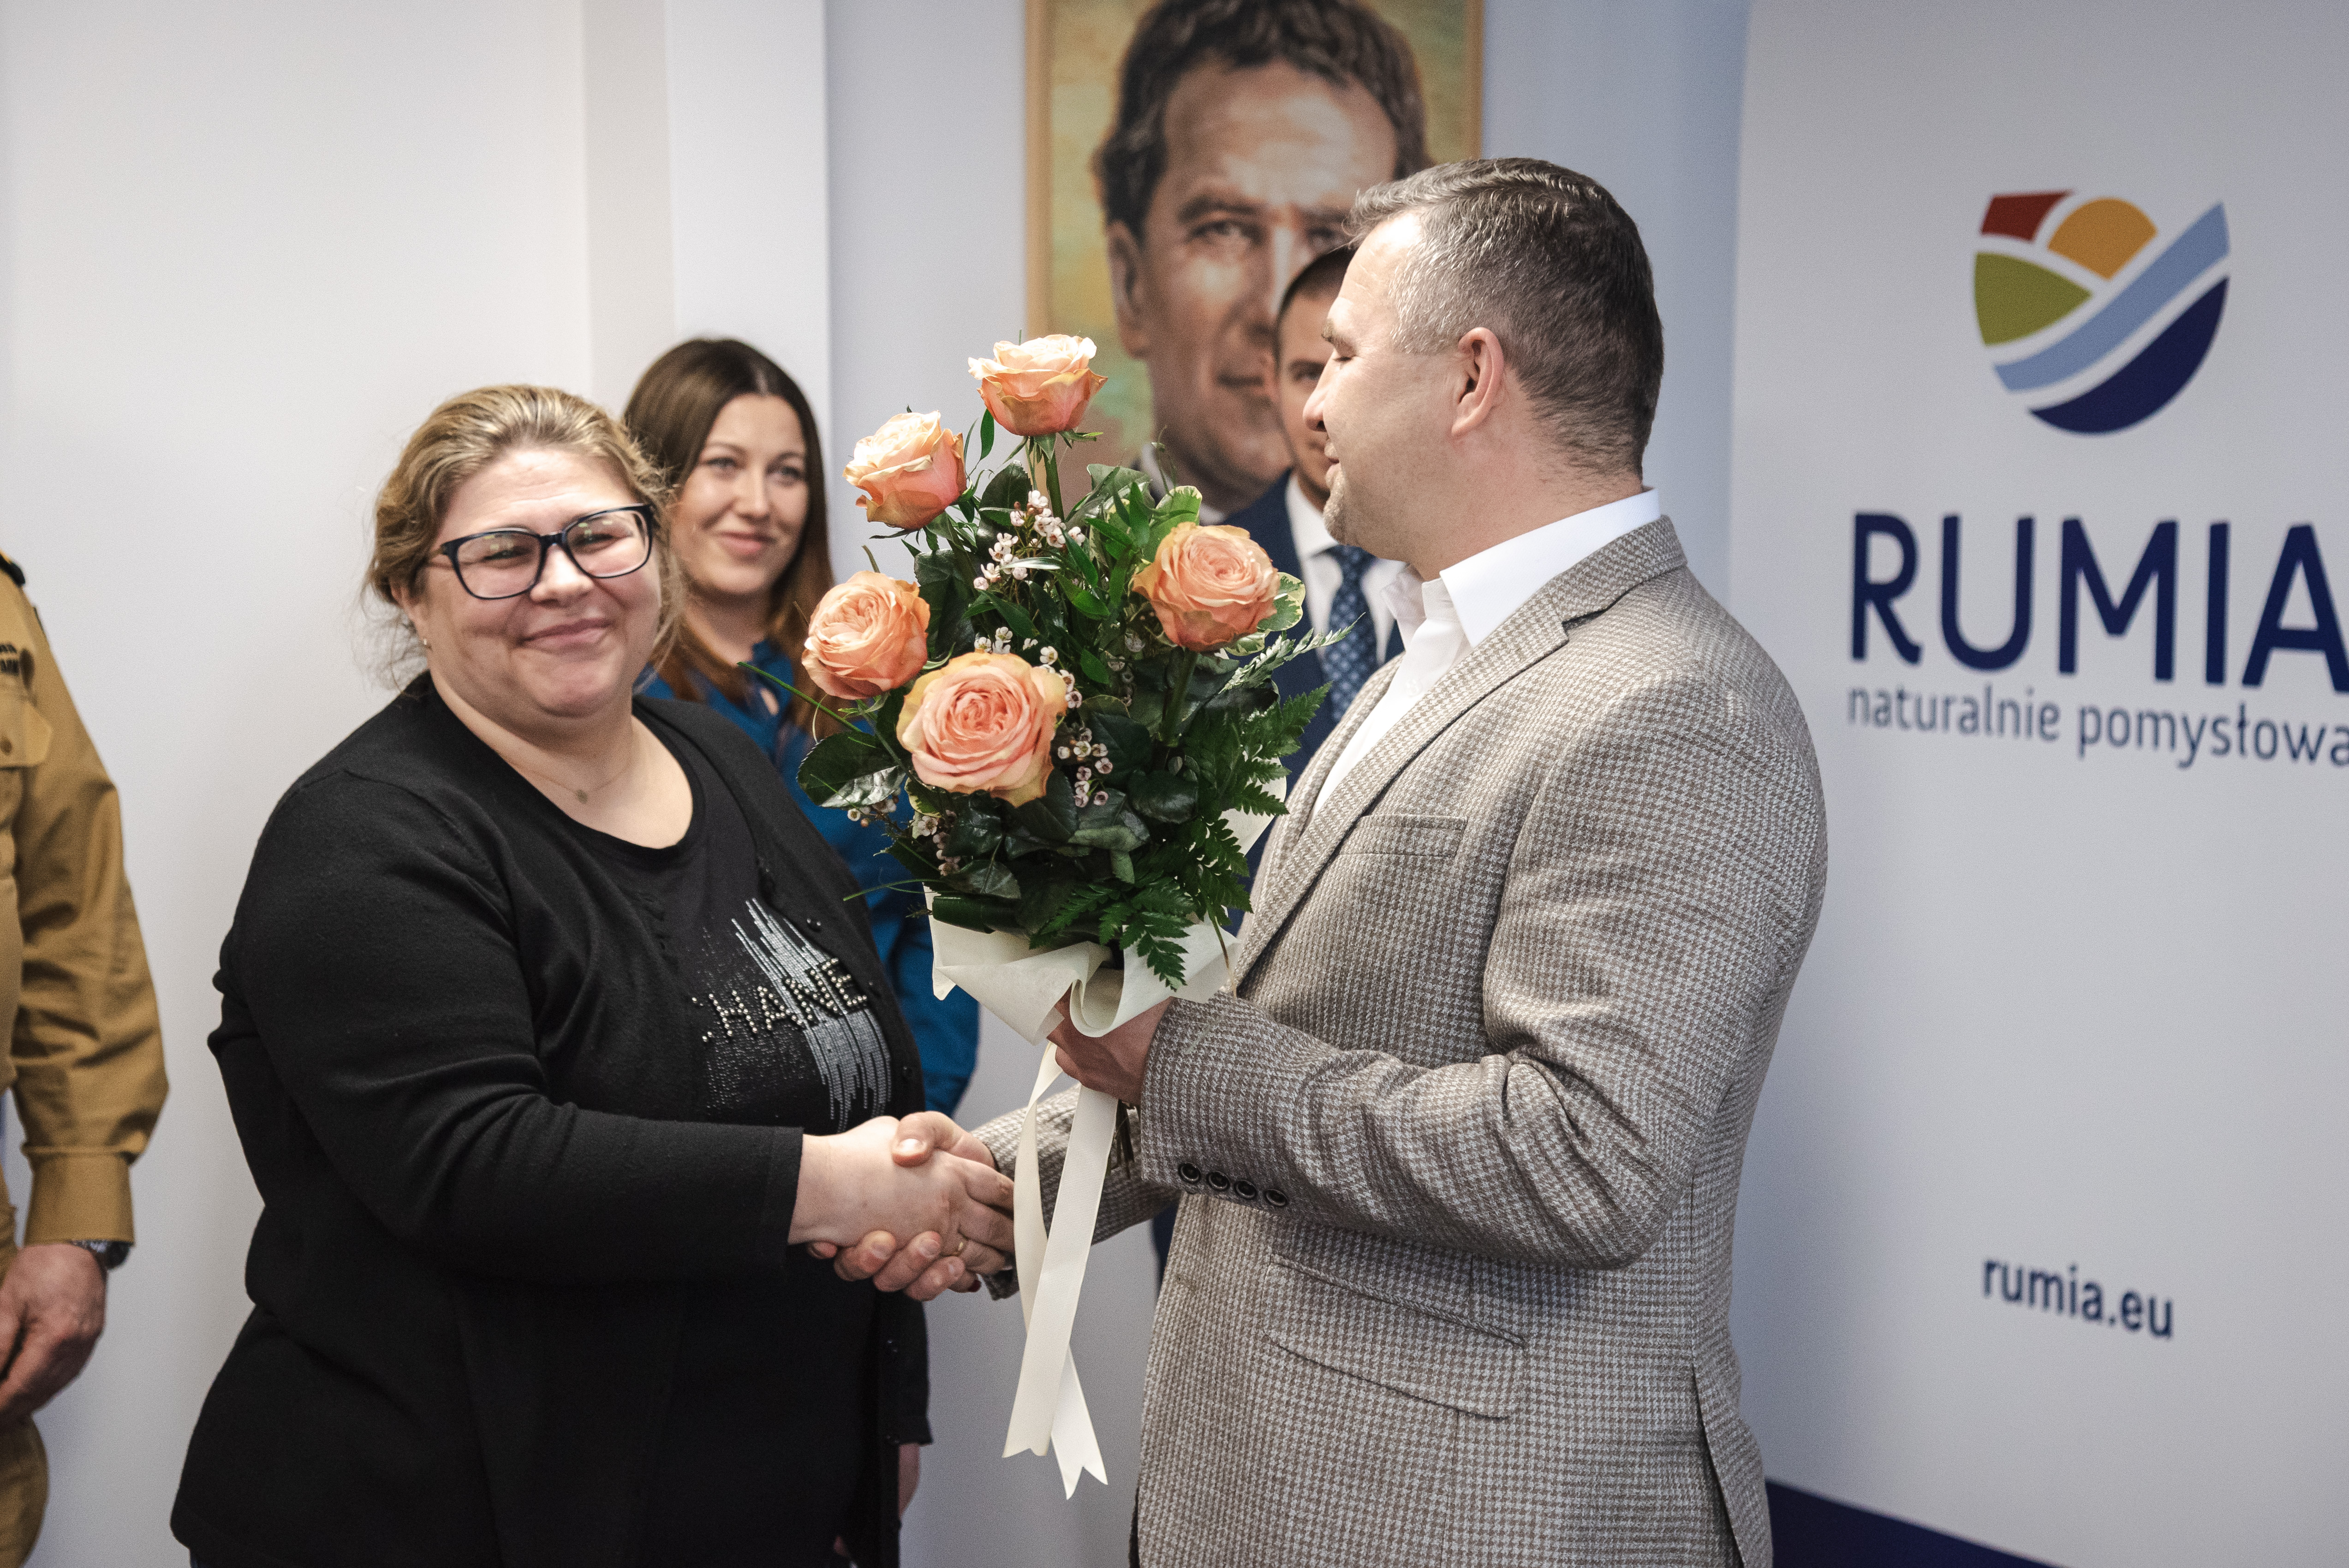 Burmistrz Michał Pasieczny (z prawej) wręcza kwiaty Anicie Sierockiej, która była poszkodowaną w wypadku